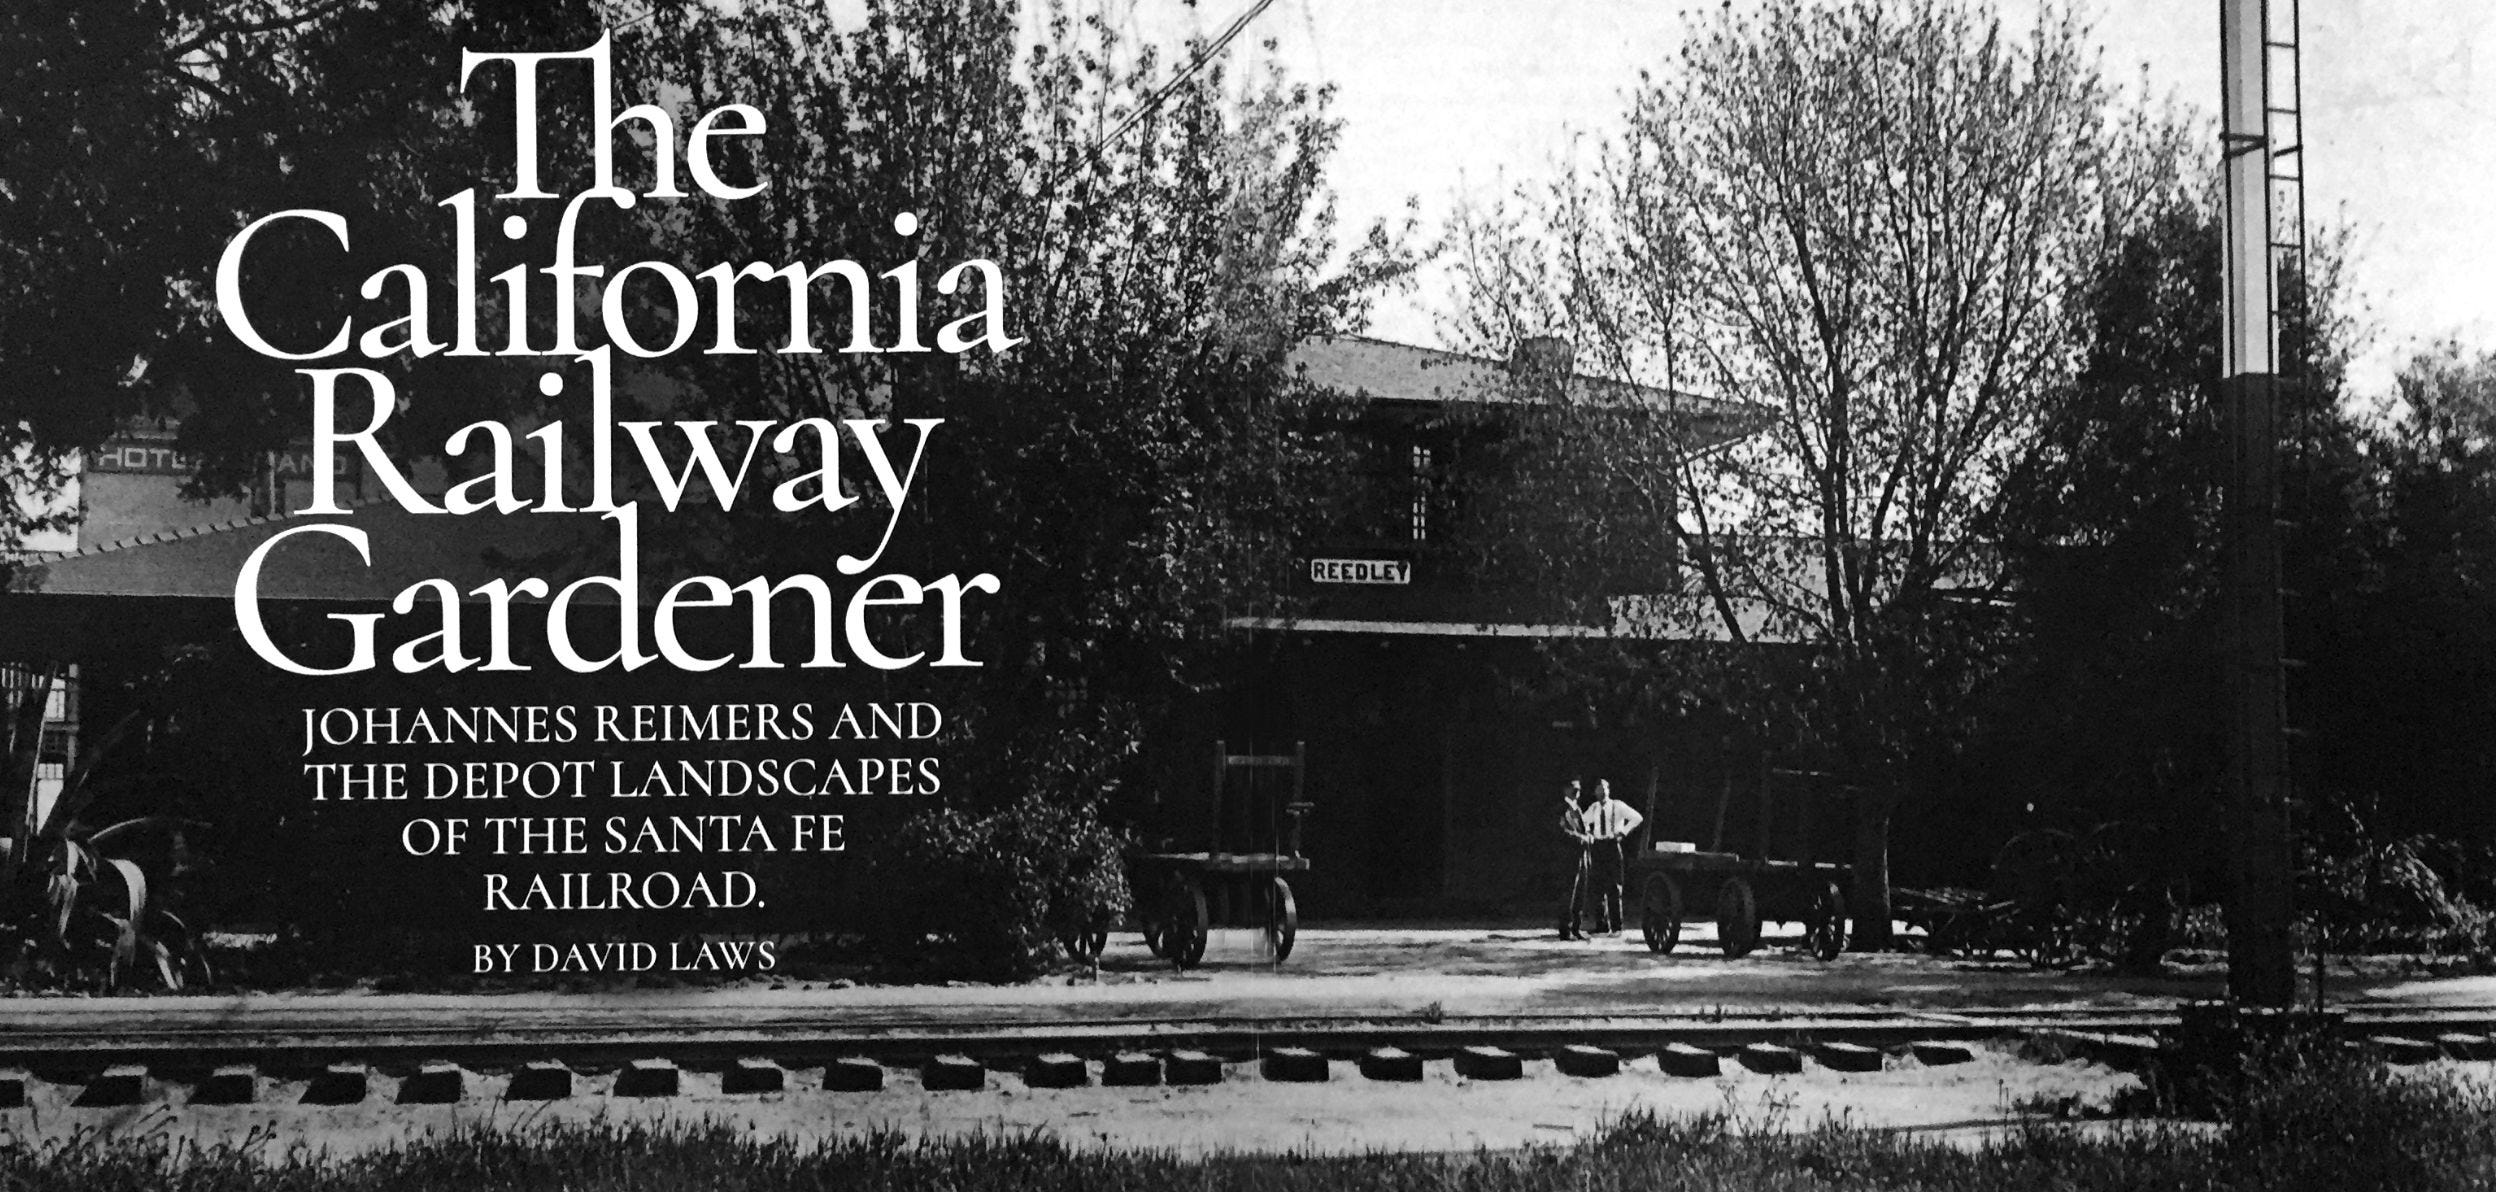 The California Railway Gardener image photo